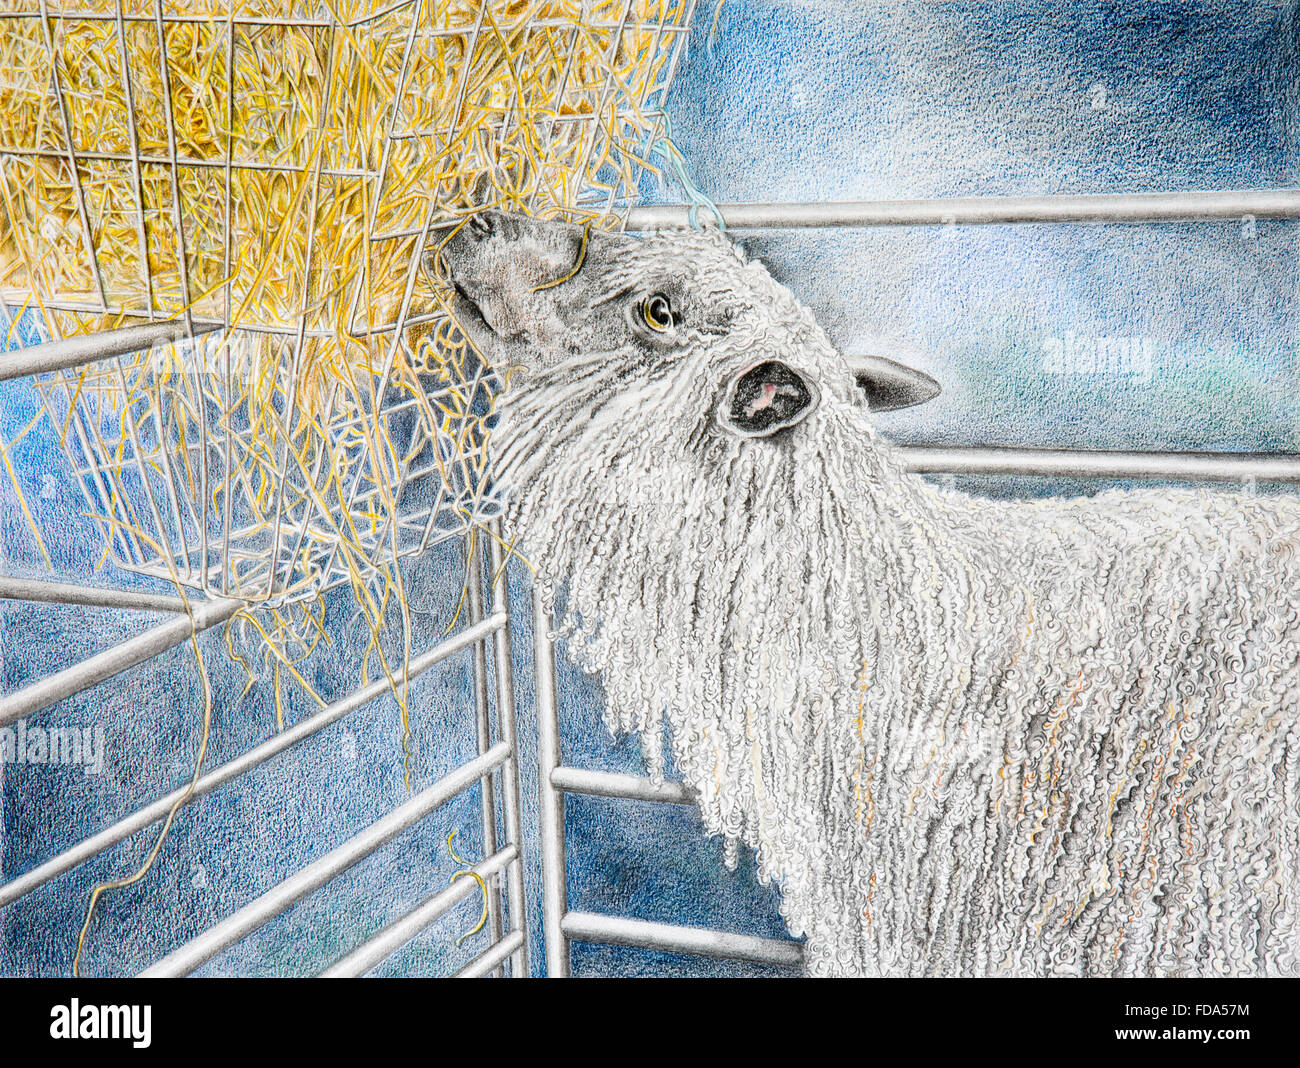 Tierhaltung, Bleistift Wensleydale Schafe Essen Heu aus indoor Feeder, farbige Illustration von Hazel McAllister Stockfoto